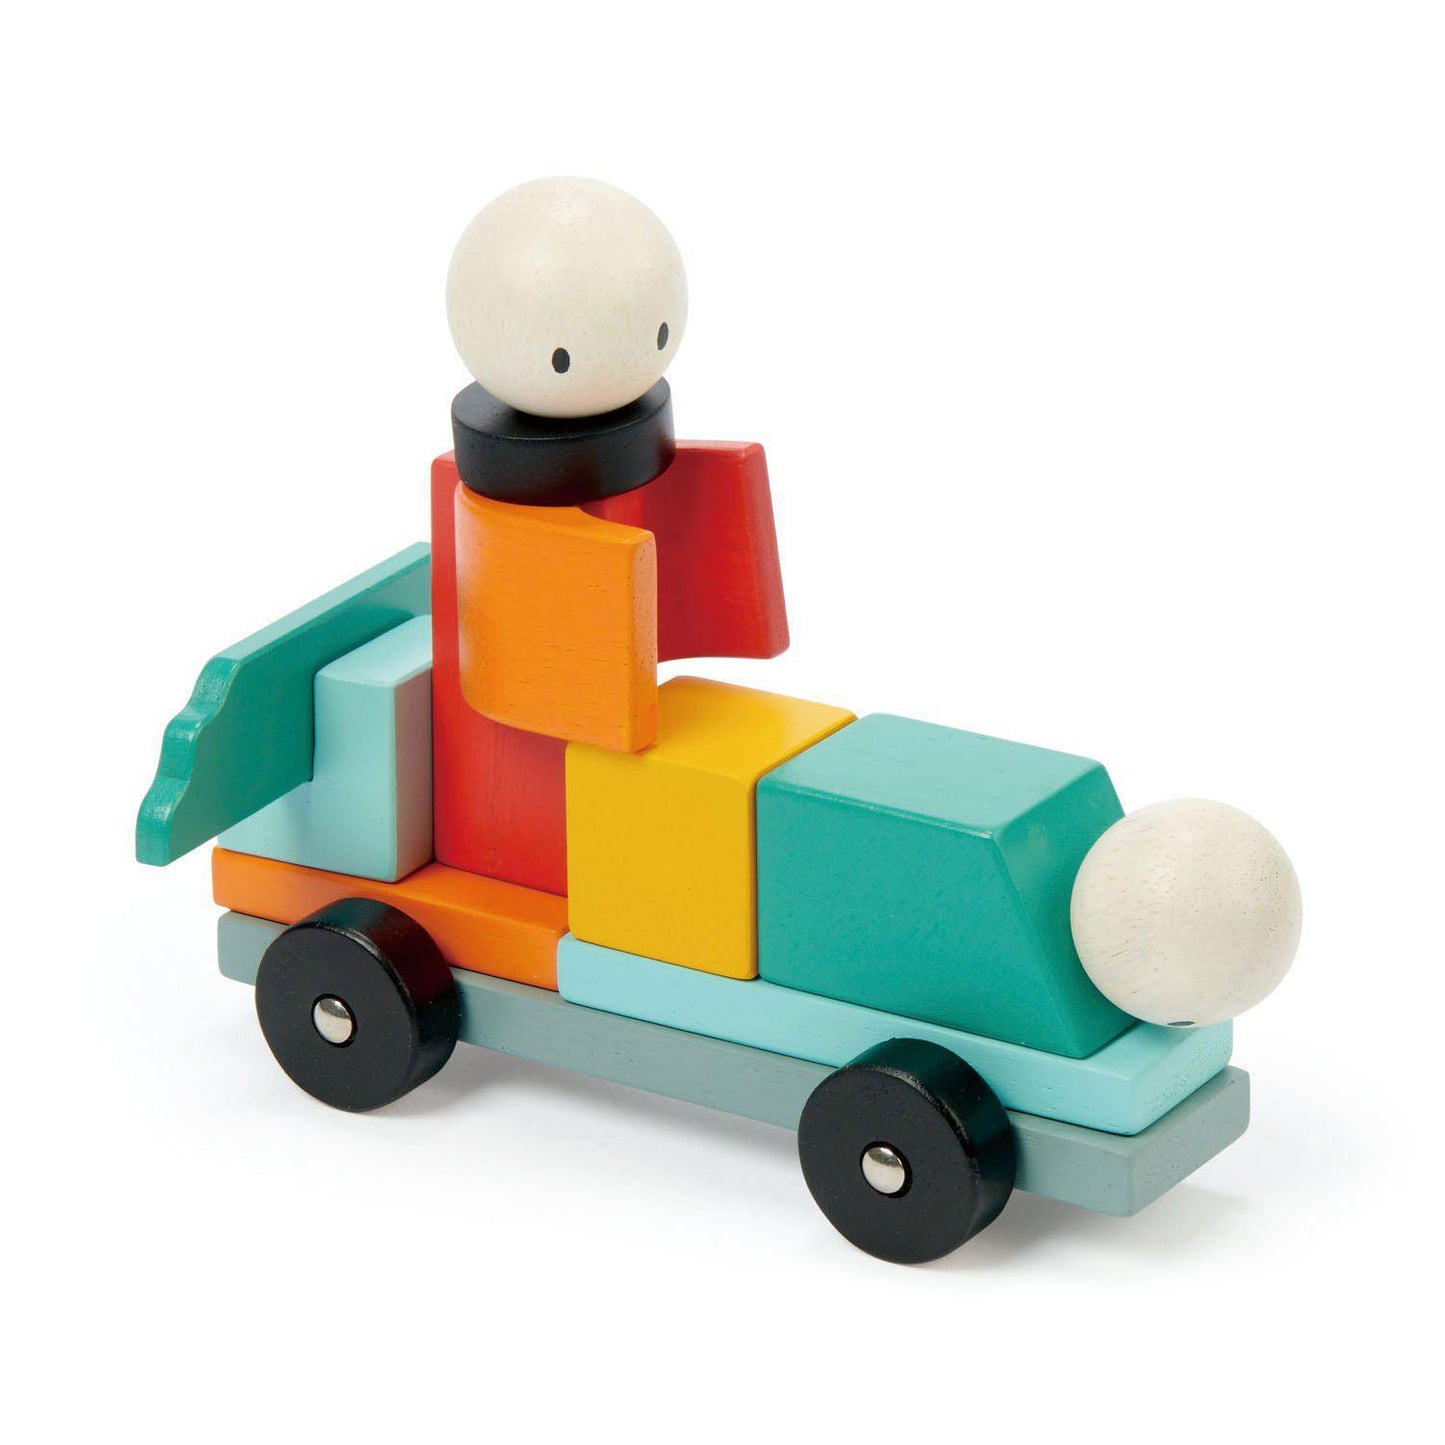 Racing Magblocks mágneses építő játék, prémium minőségű fából - Racing Magblocs - 14 darab -Tender Leaf Toys-Tender Leaf Toys-2-Játszma.ro - A maradandó élmények boltja